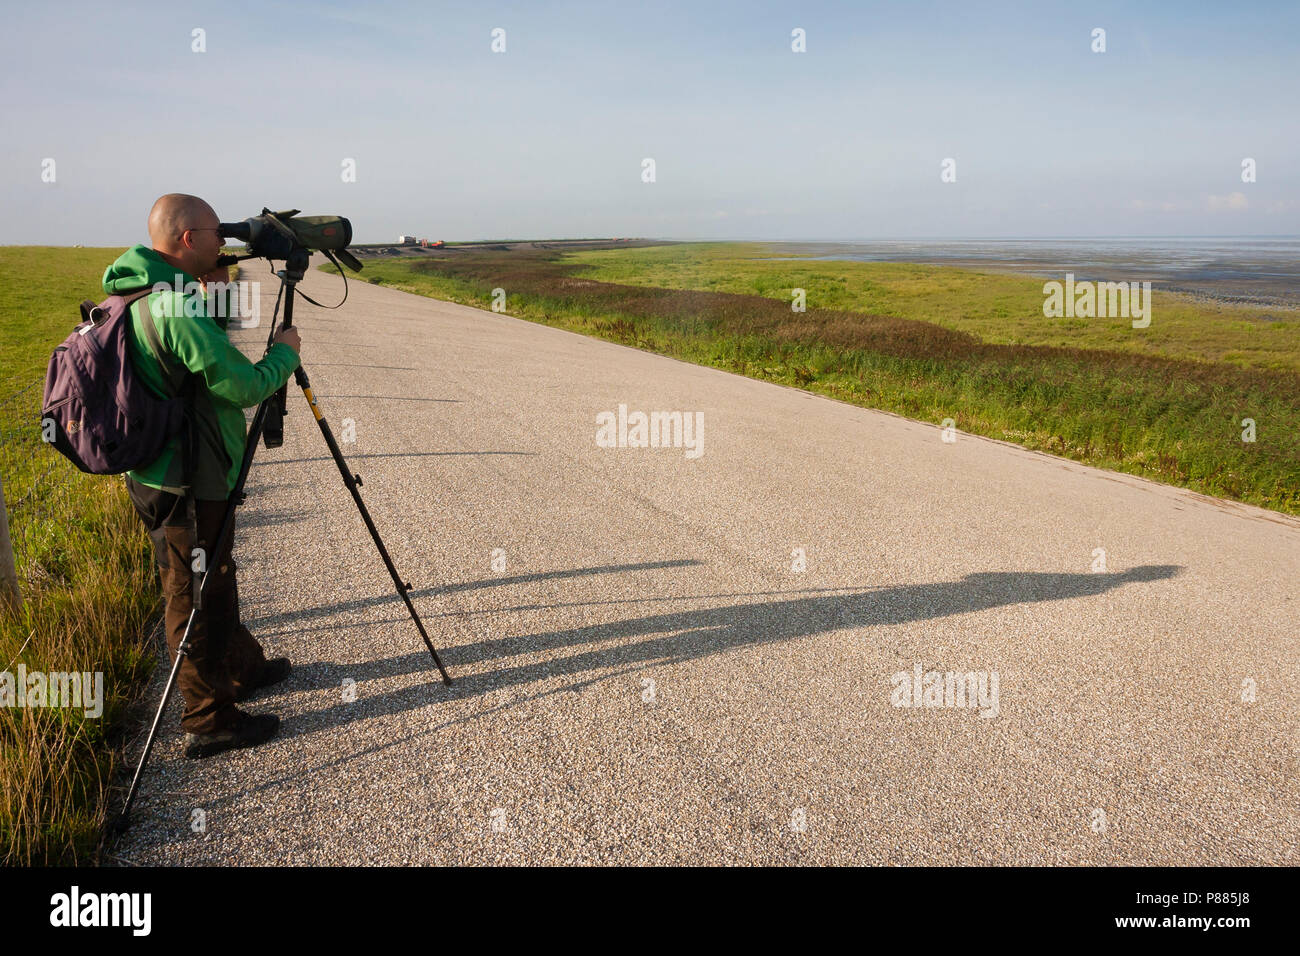 Vogelaar met Teleskopes staand op Dijk; Vogelbeobachter mit Teleskop am Deich Stockfoto